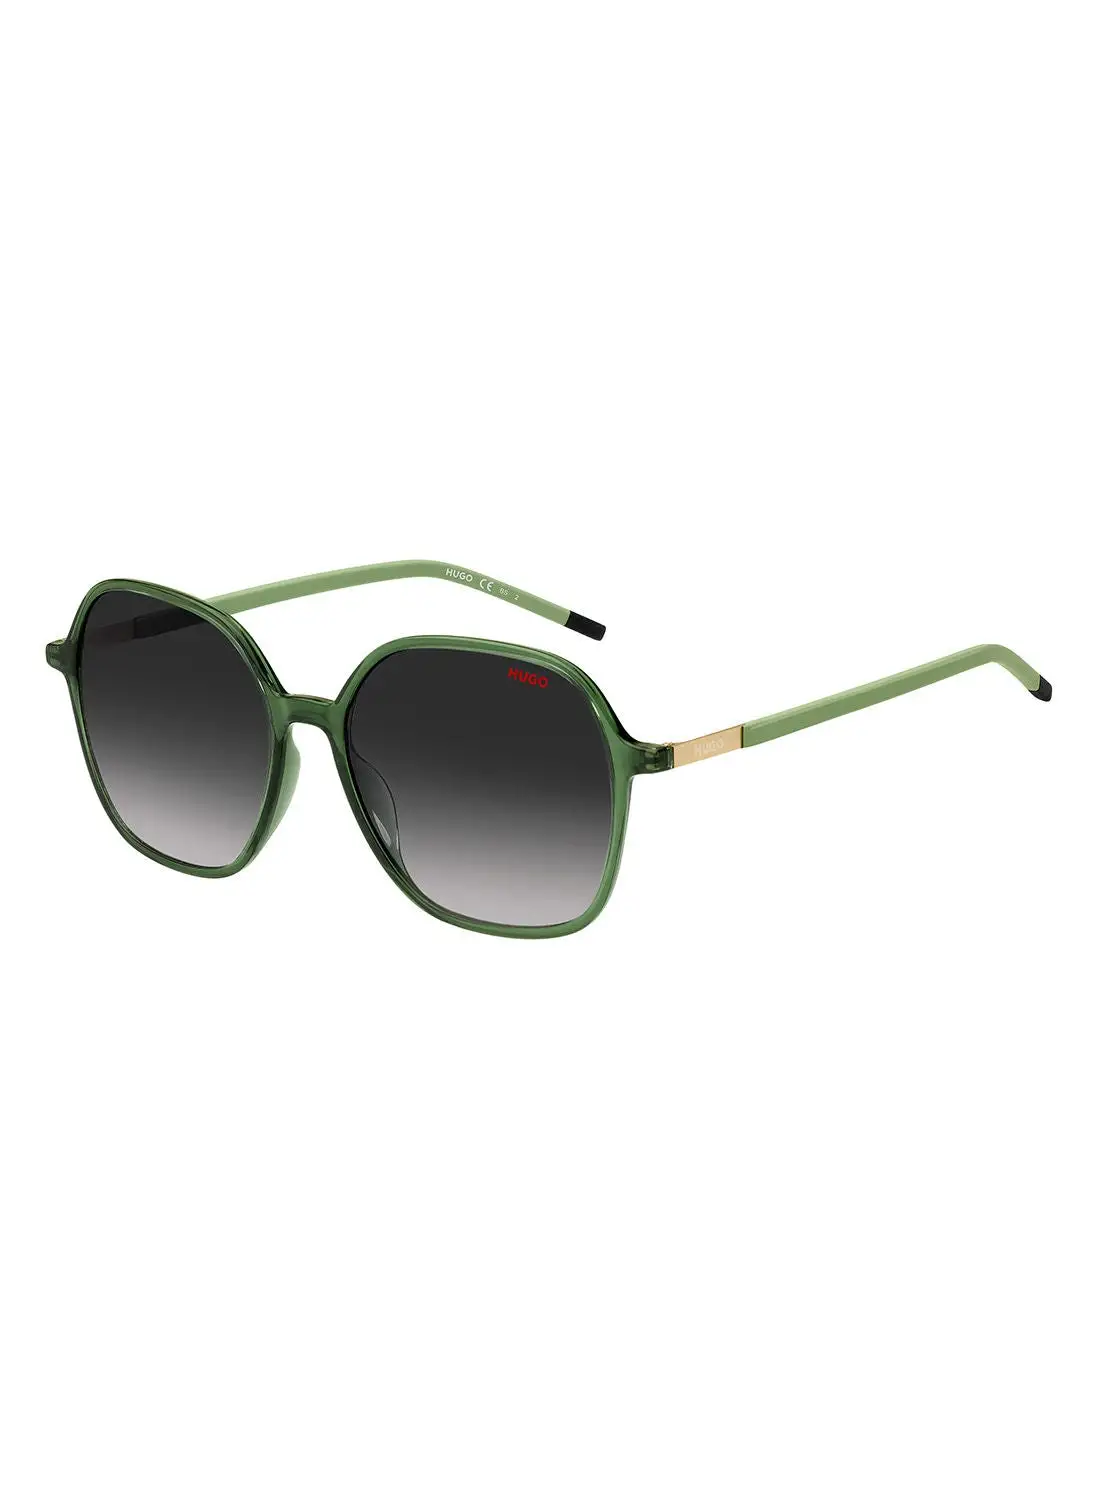 HUGO Women's UV Protection Octagonal Sunglasses - Hg 1236/S Green 55 - Lens Size: 55 Mm